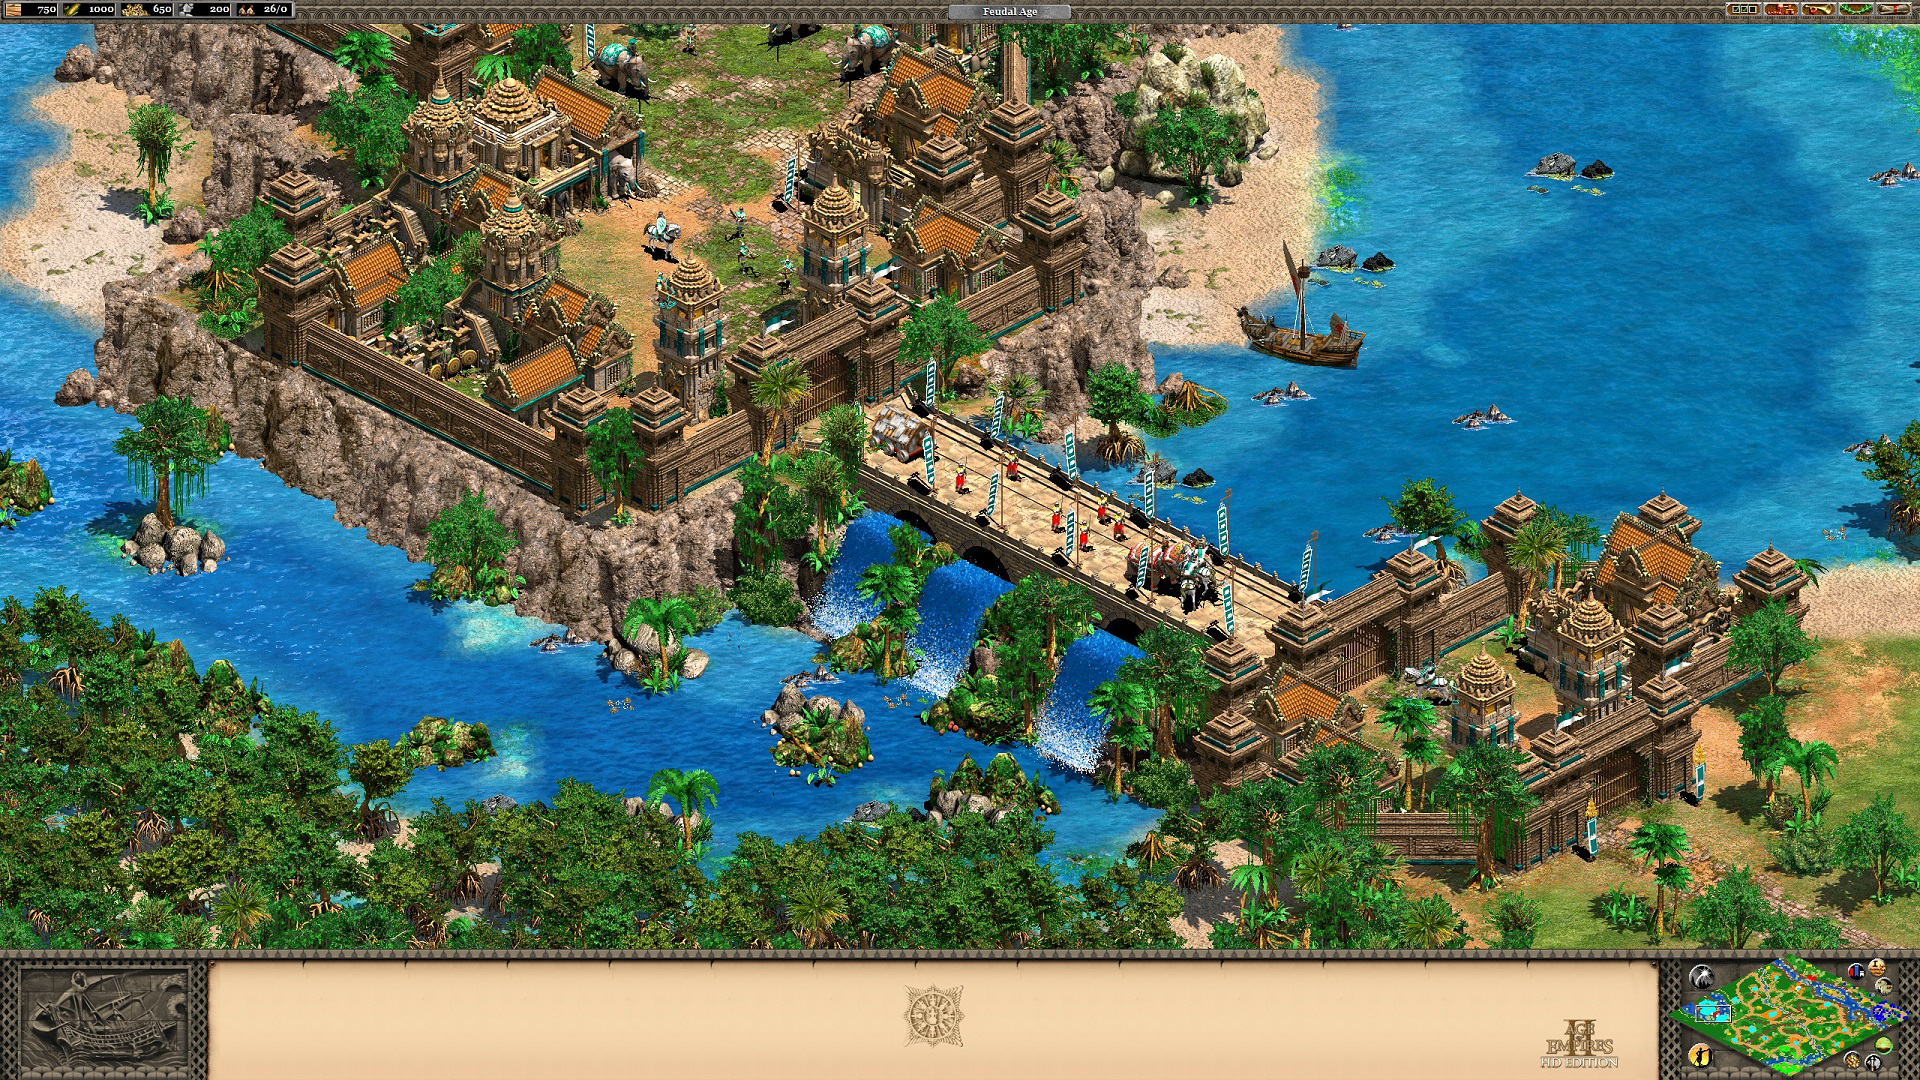 Age of Empires II HD - một trong những tựa game chiến thuật cổ điển nhất, đã được phân phối lại trên nền tảng Steam với đồ họa HD và nhiều tính năng mới. Trong game, bạn sẽ được đưa về thời kỳ trung cổ thực sự, xây dựng quân đội, tạo chiến thuật, và chiến đấu để chinh phục thế giới. Hãy tới và đắm mình trong không gian lịch sử đầy kịch tính của Age of Empires II HD.